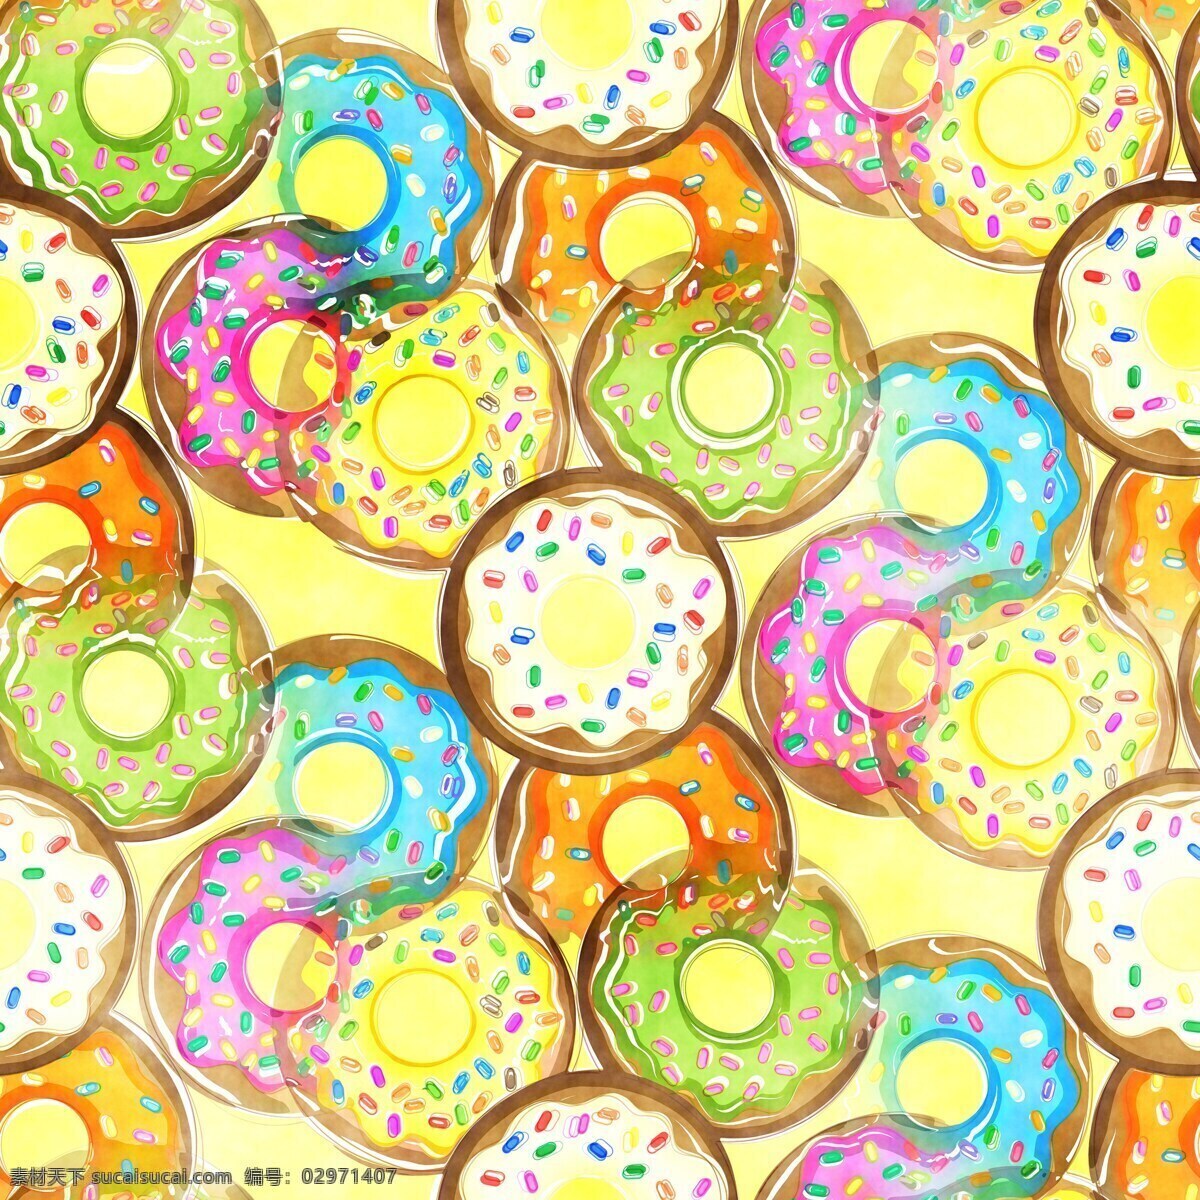 甜甜圈 炸 甜点 甜 食品 糖果 面包店 烘烤的 好吃 糖 甜美 色彩 绘画 透明 几何 抽象 圆 圆点 底纹 背景 壁纸 彩色 黄色 绿色 蓝色 粉色 紫色 白色 渐变